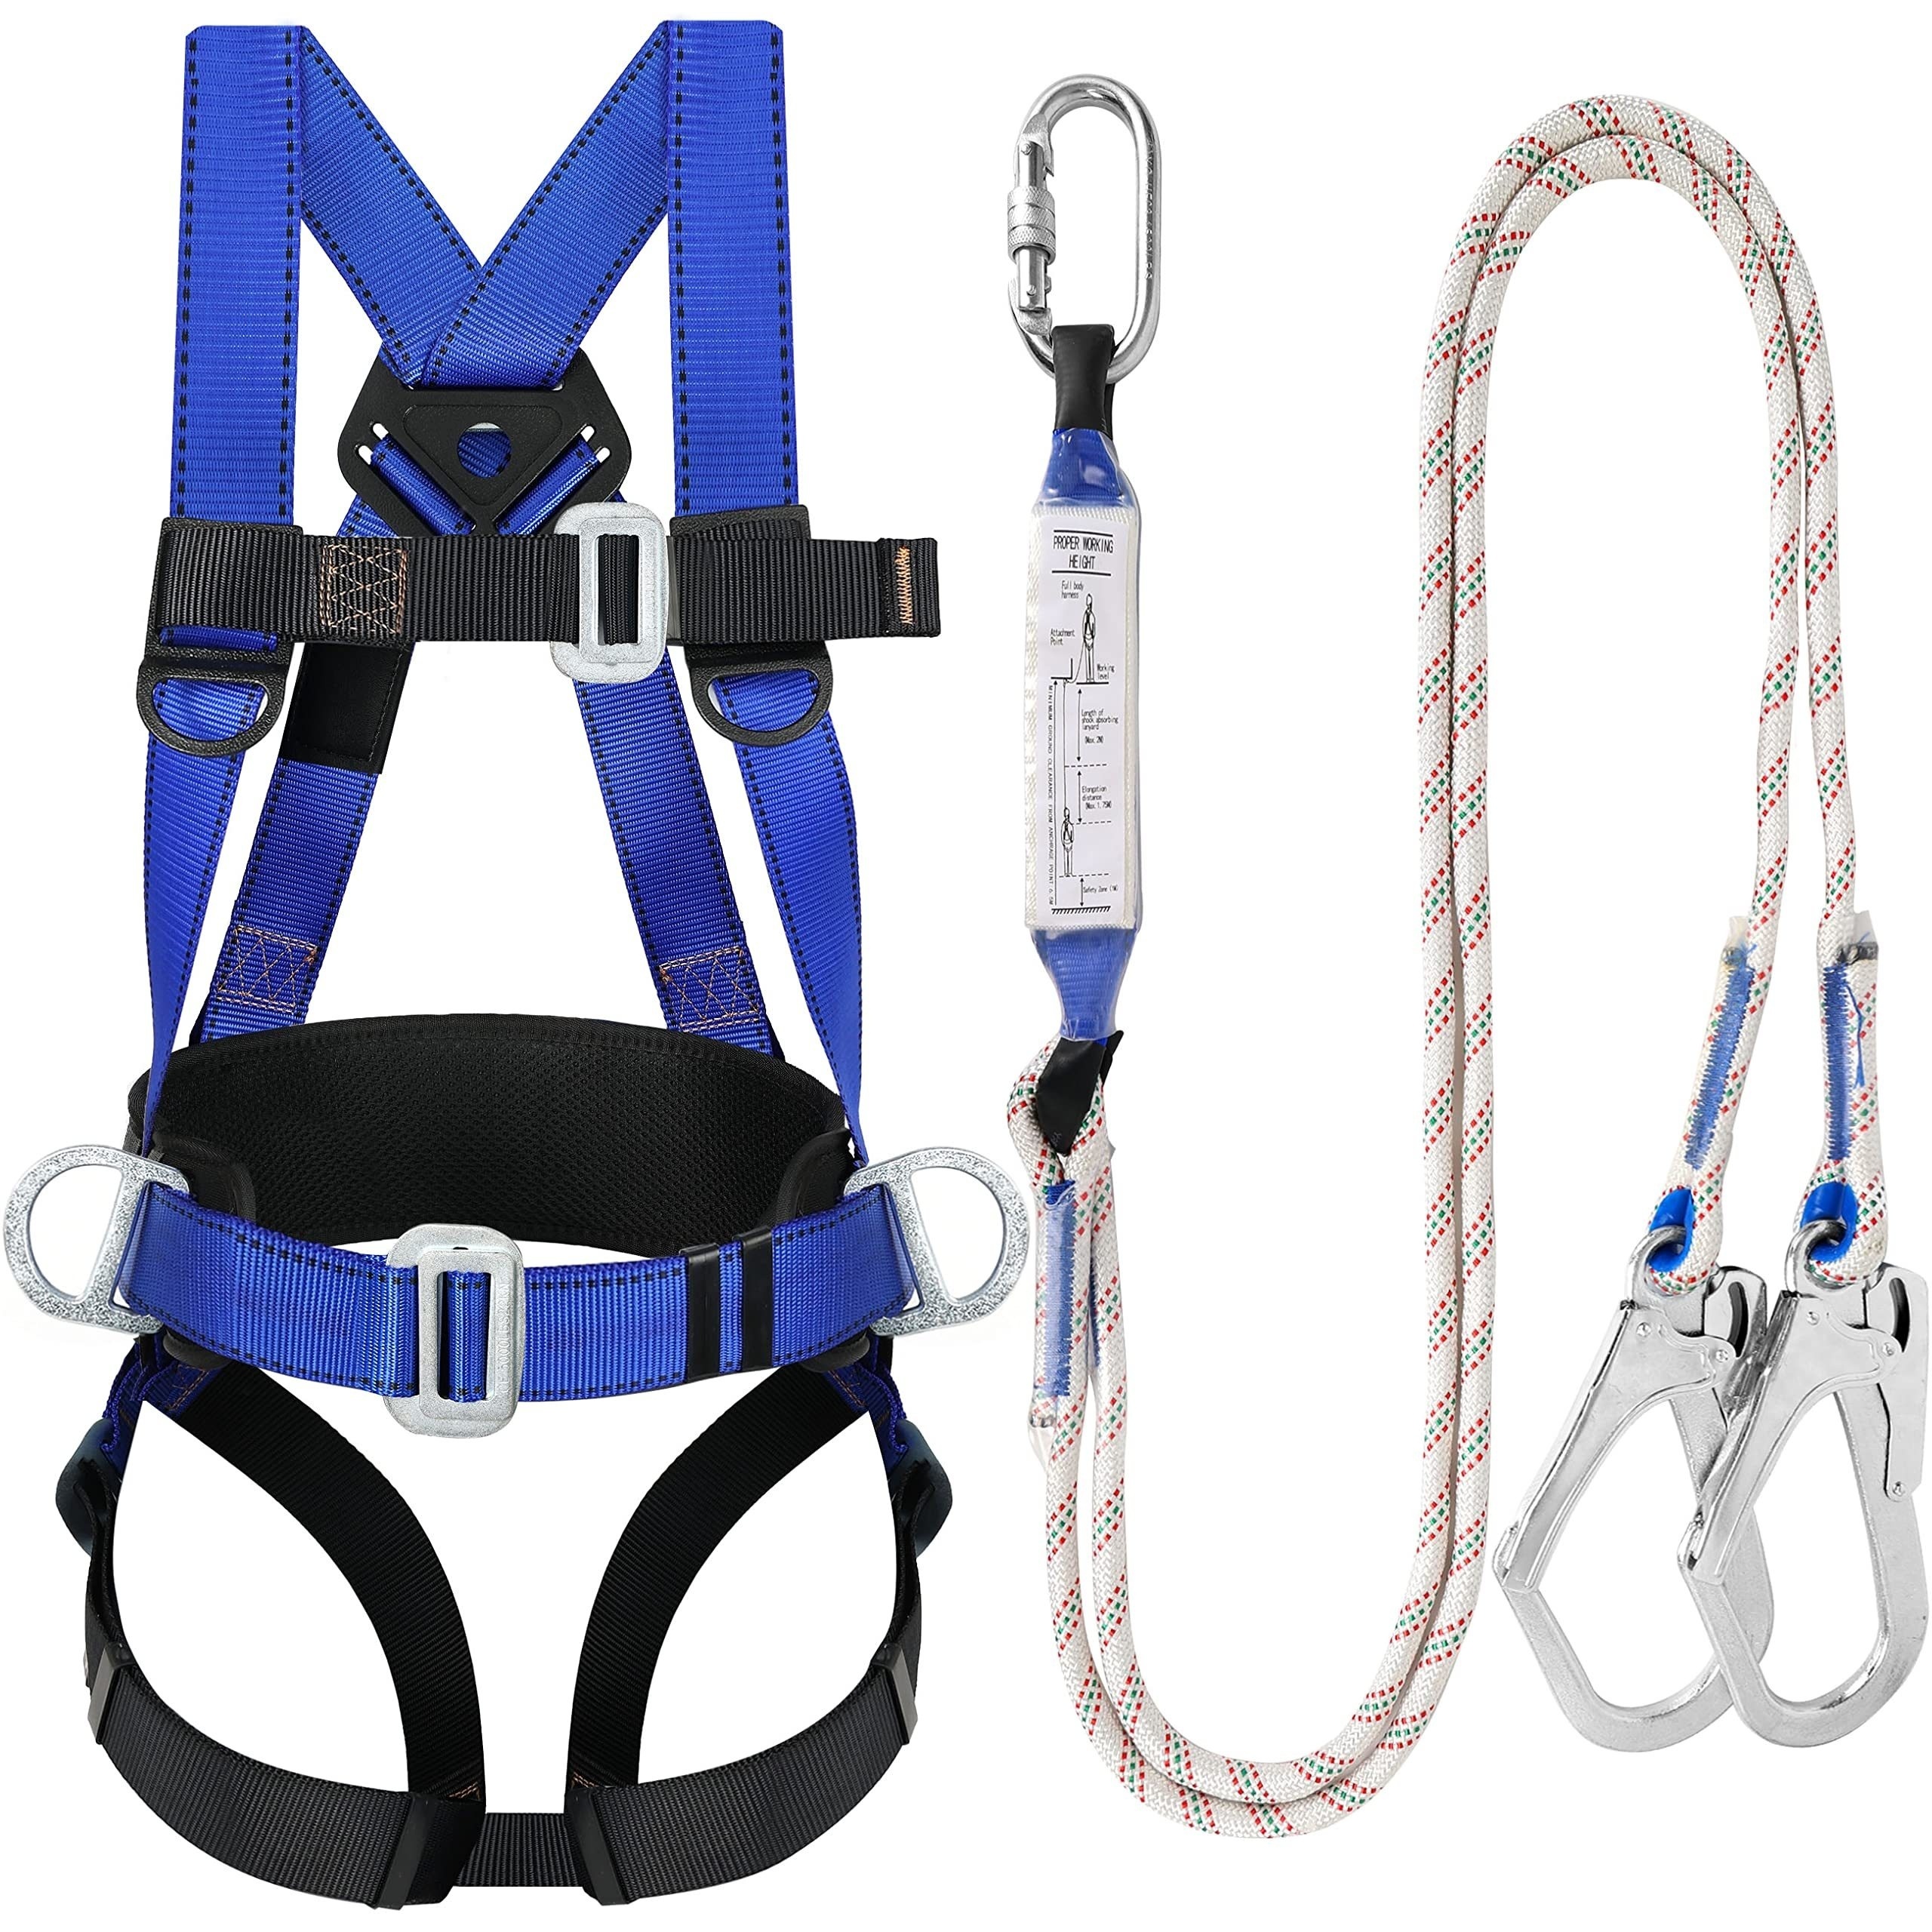 1 protector lumbar, cinturón de trabajo con soporte y cintura ajustable,  arnés lumbar para cargas pesadas.